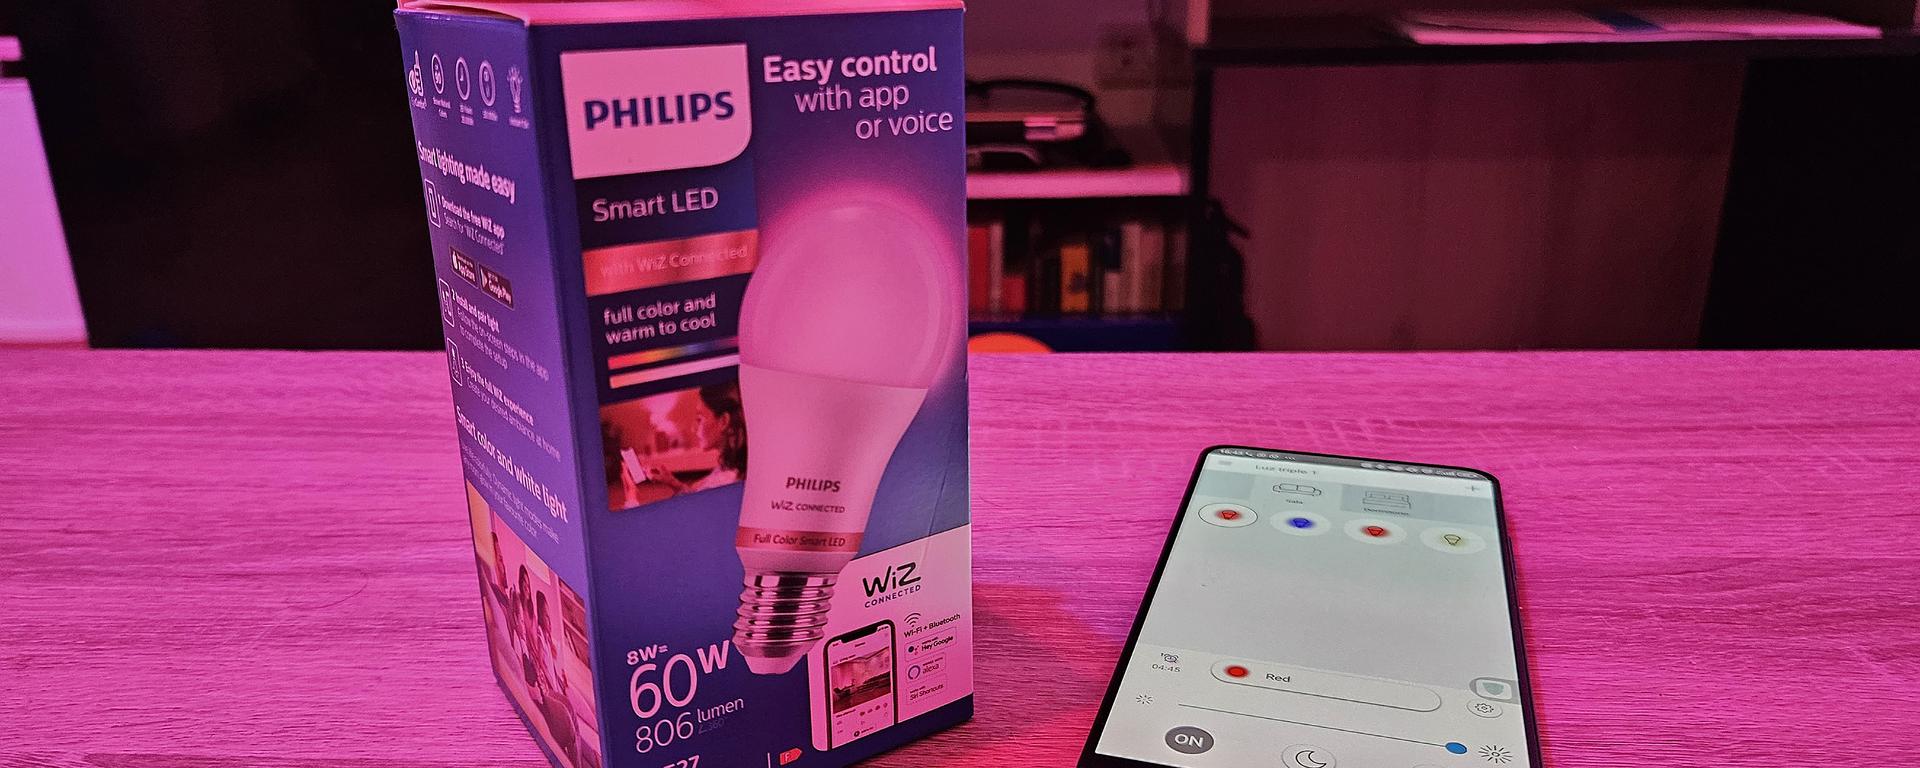 ¿Cómo funcionan las luces inteligentes para el hogar? Probamos los focos inteligentes de Philips